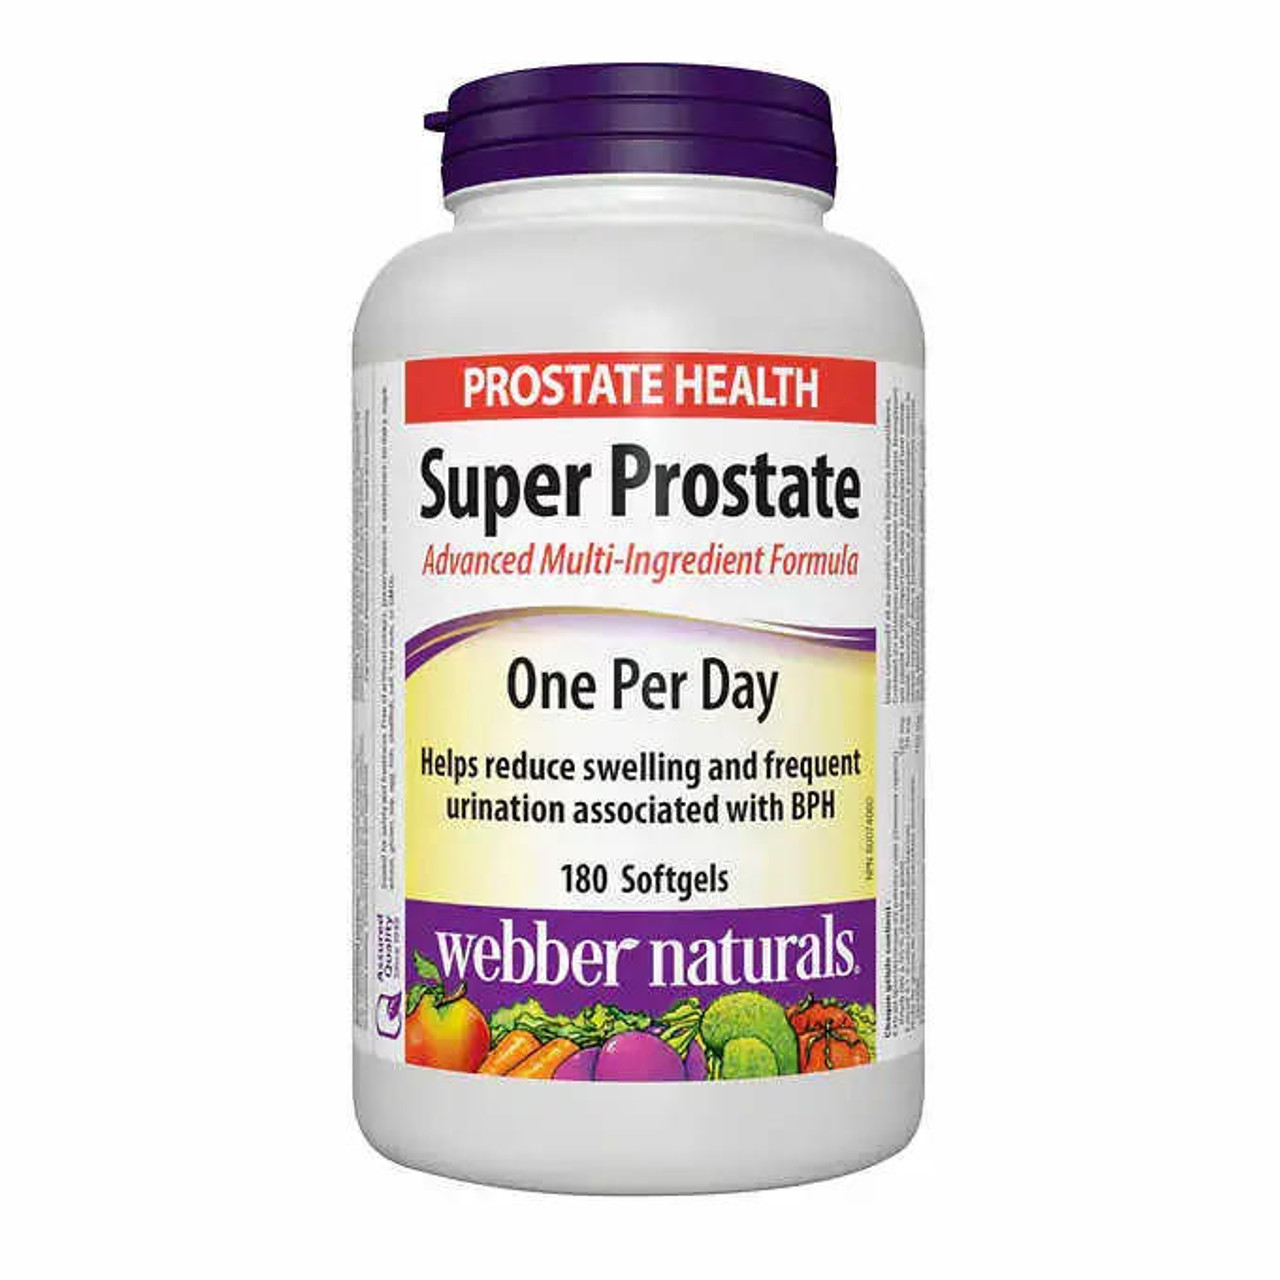 webber naturals Webber Naturals Super Prostate Advanced Multi-Ingredient Formula Softgels - 180-count | Prostate Health Support 